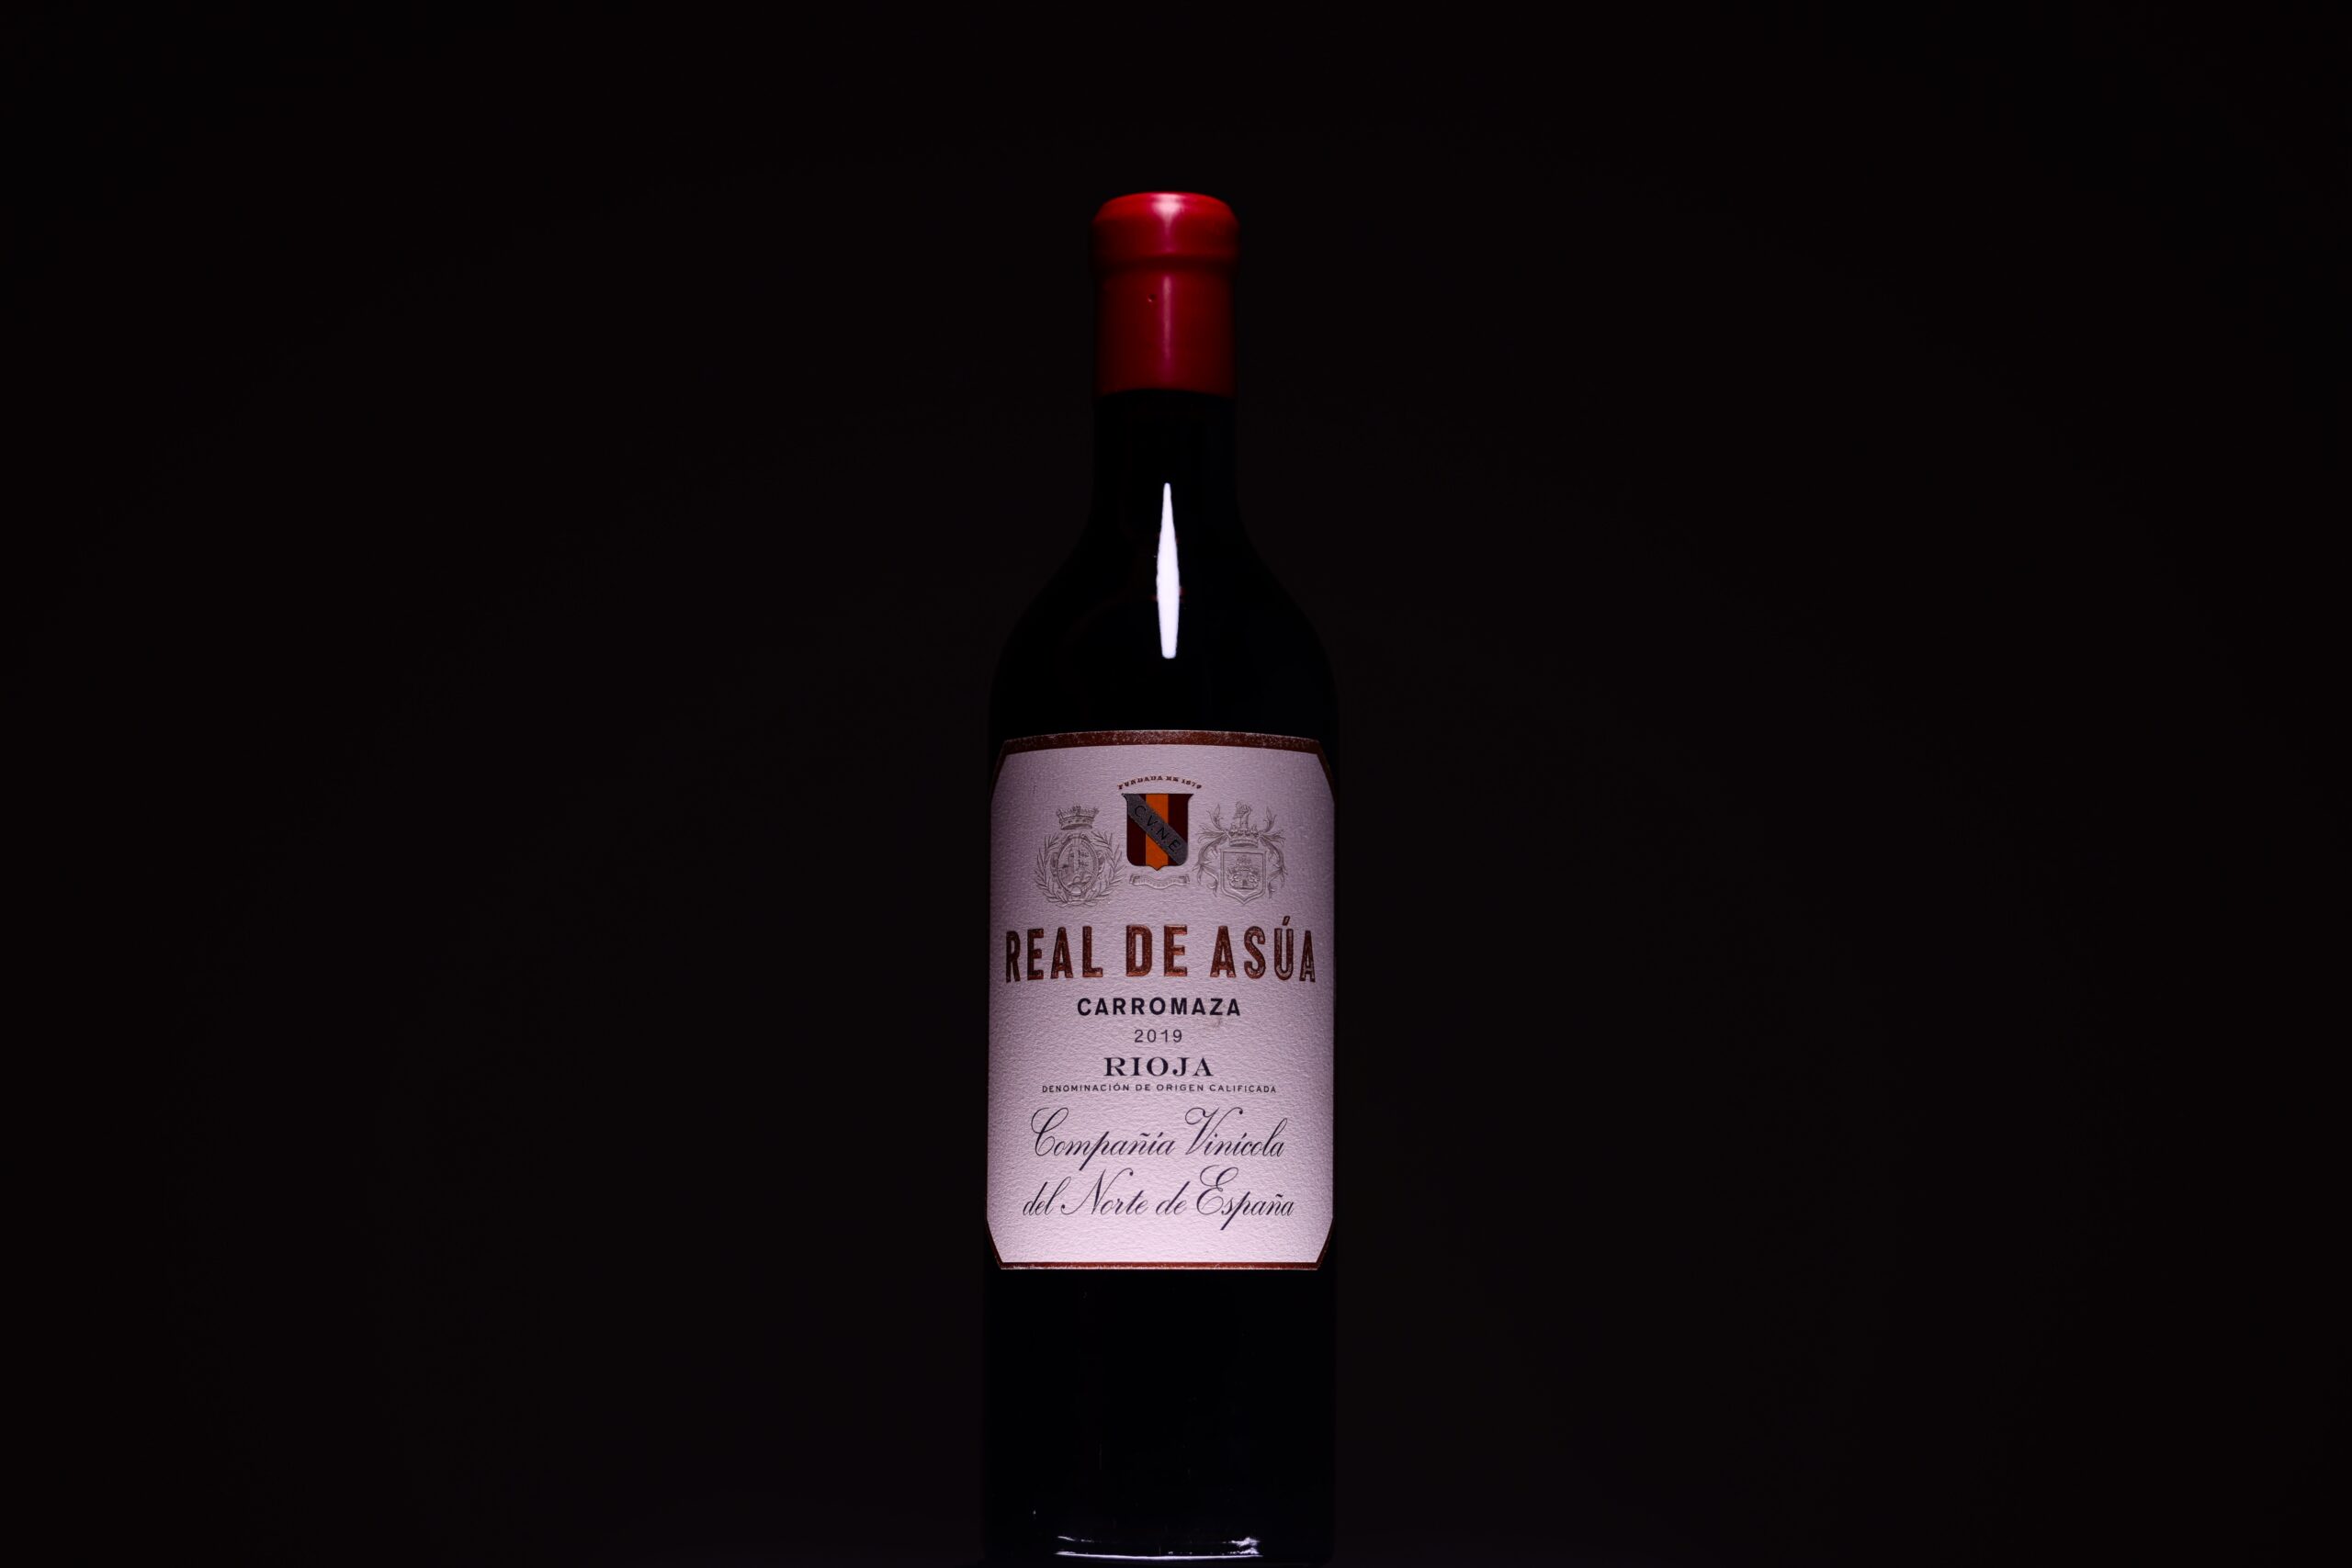 Vino Rioja Real de Asua (Cvne, España) se presentó por primera vez en Via la Place de Bordeaux el pasado 21 de septiembre